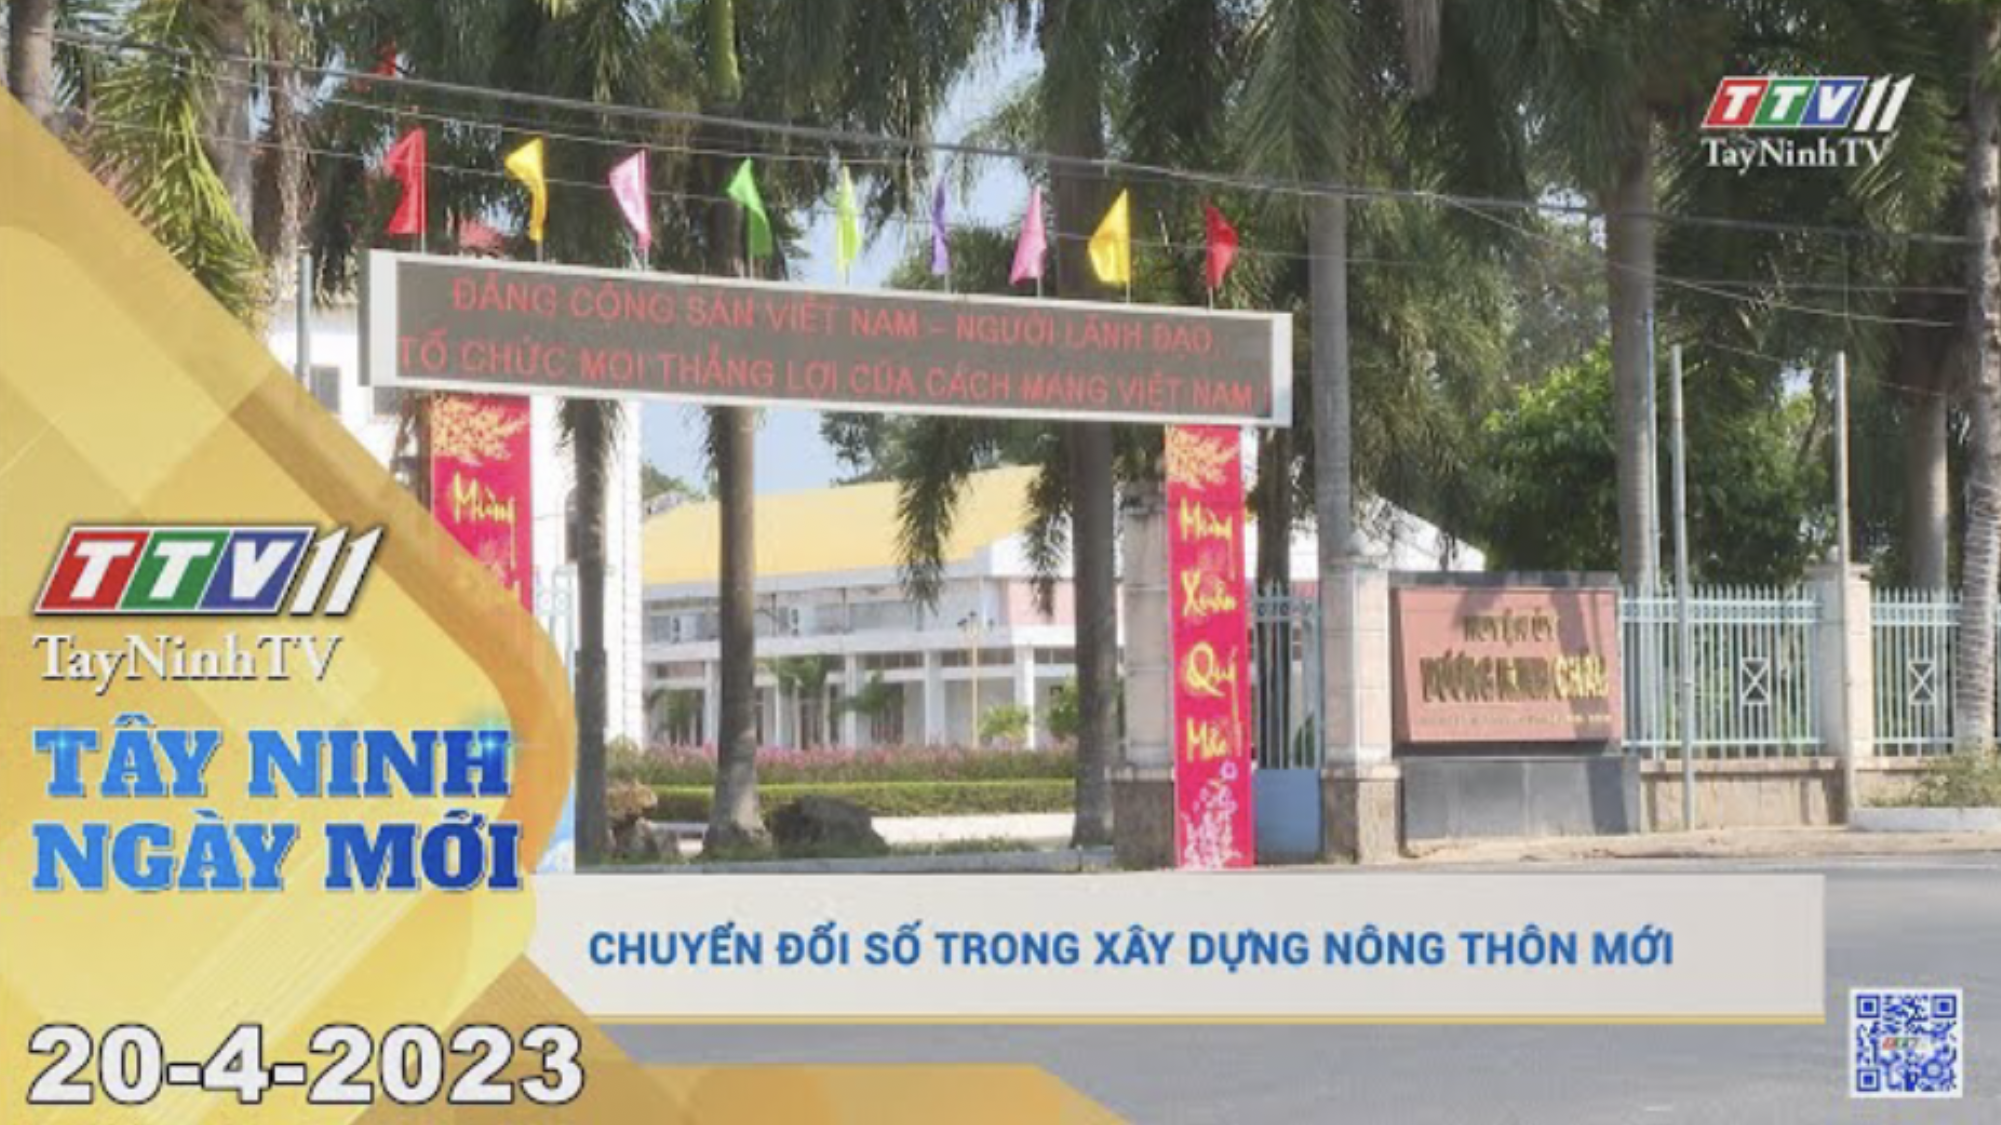 Tây Ninh ngày mới 20-4-2023 | Tin tức hôm nay | TayNinhTV